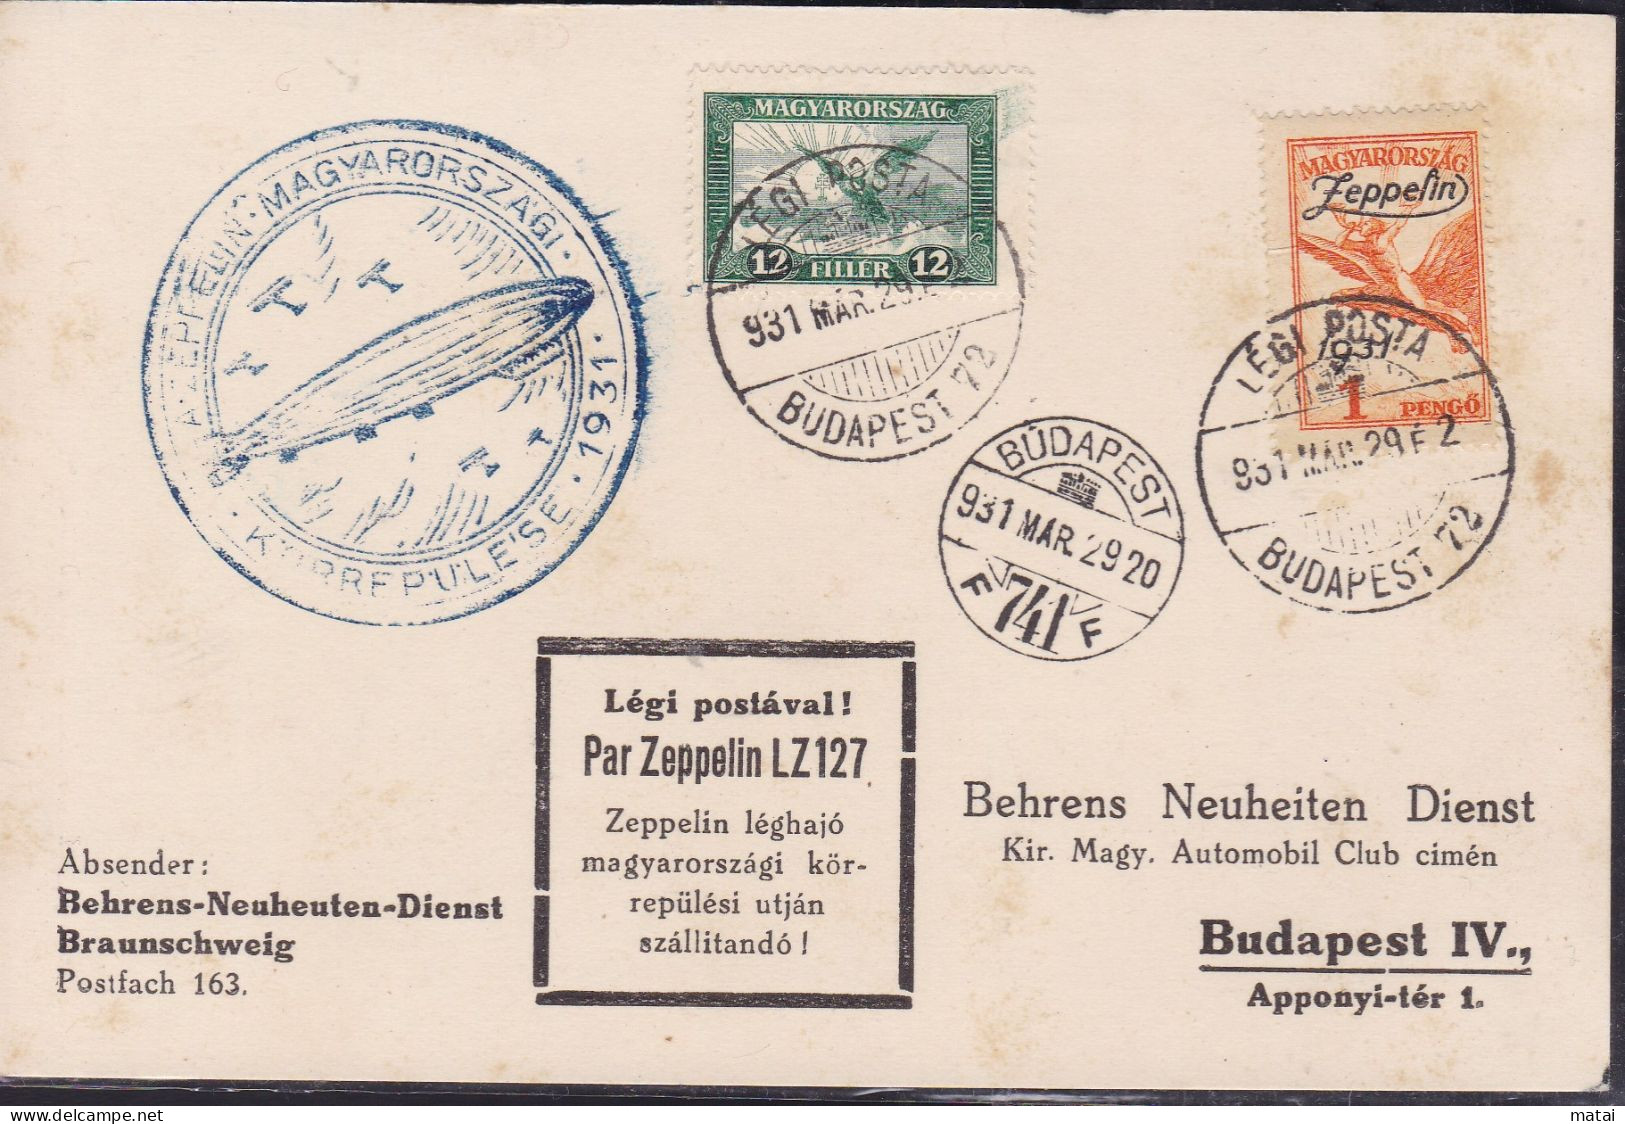 HUNGARY 1929 PAR ZEPPELIN LZ 127 - Covers & Documents